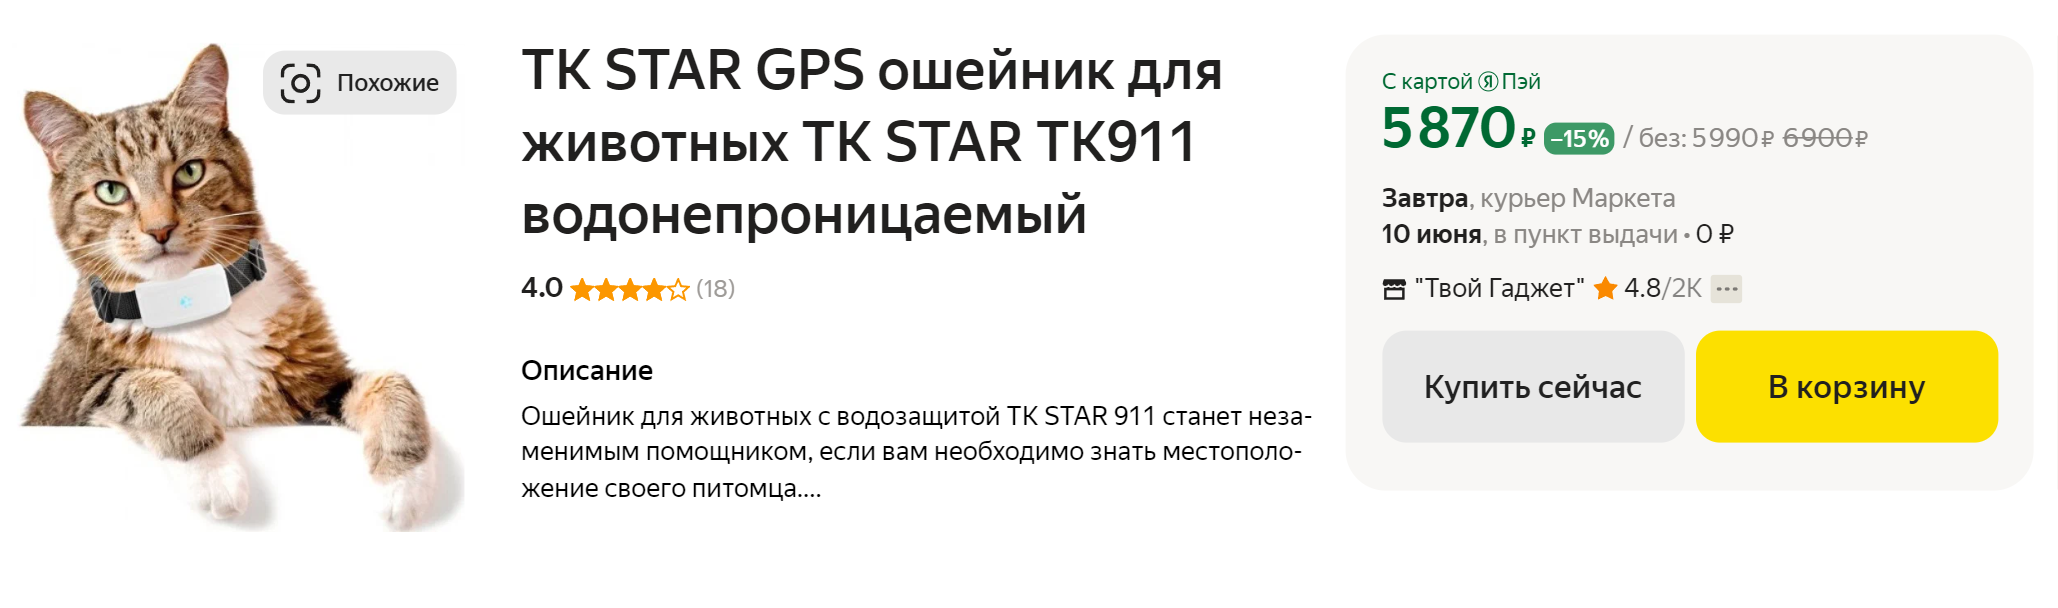 Ошейник с GPS⁠-⁠трекером позволит узнать местоположение питомца, если он потерялся. Источник: market.yandex.ru